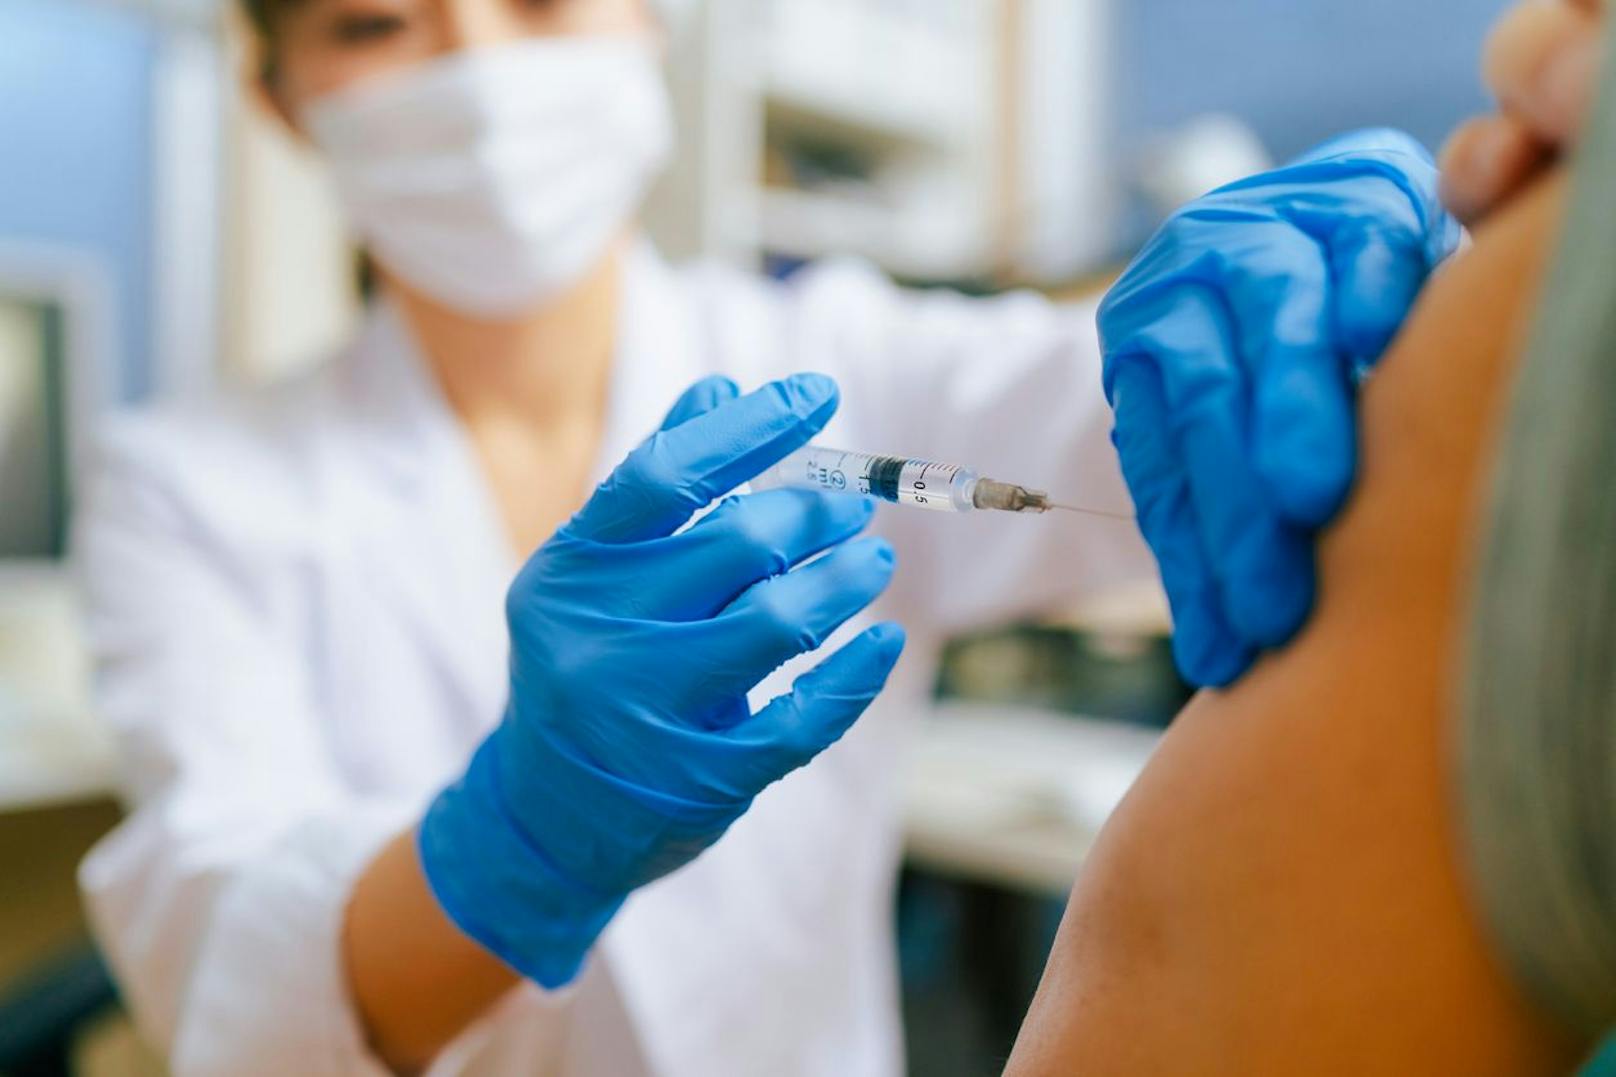 "Alltag kaum möglich" – immer mehr Impfschäden aufgedeckt